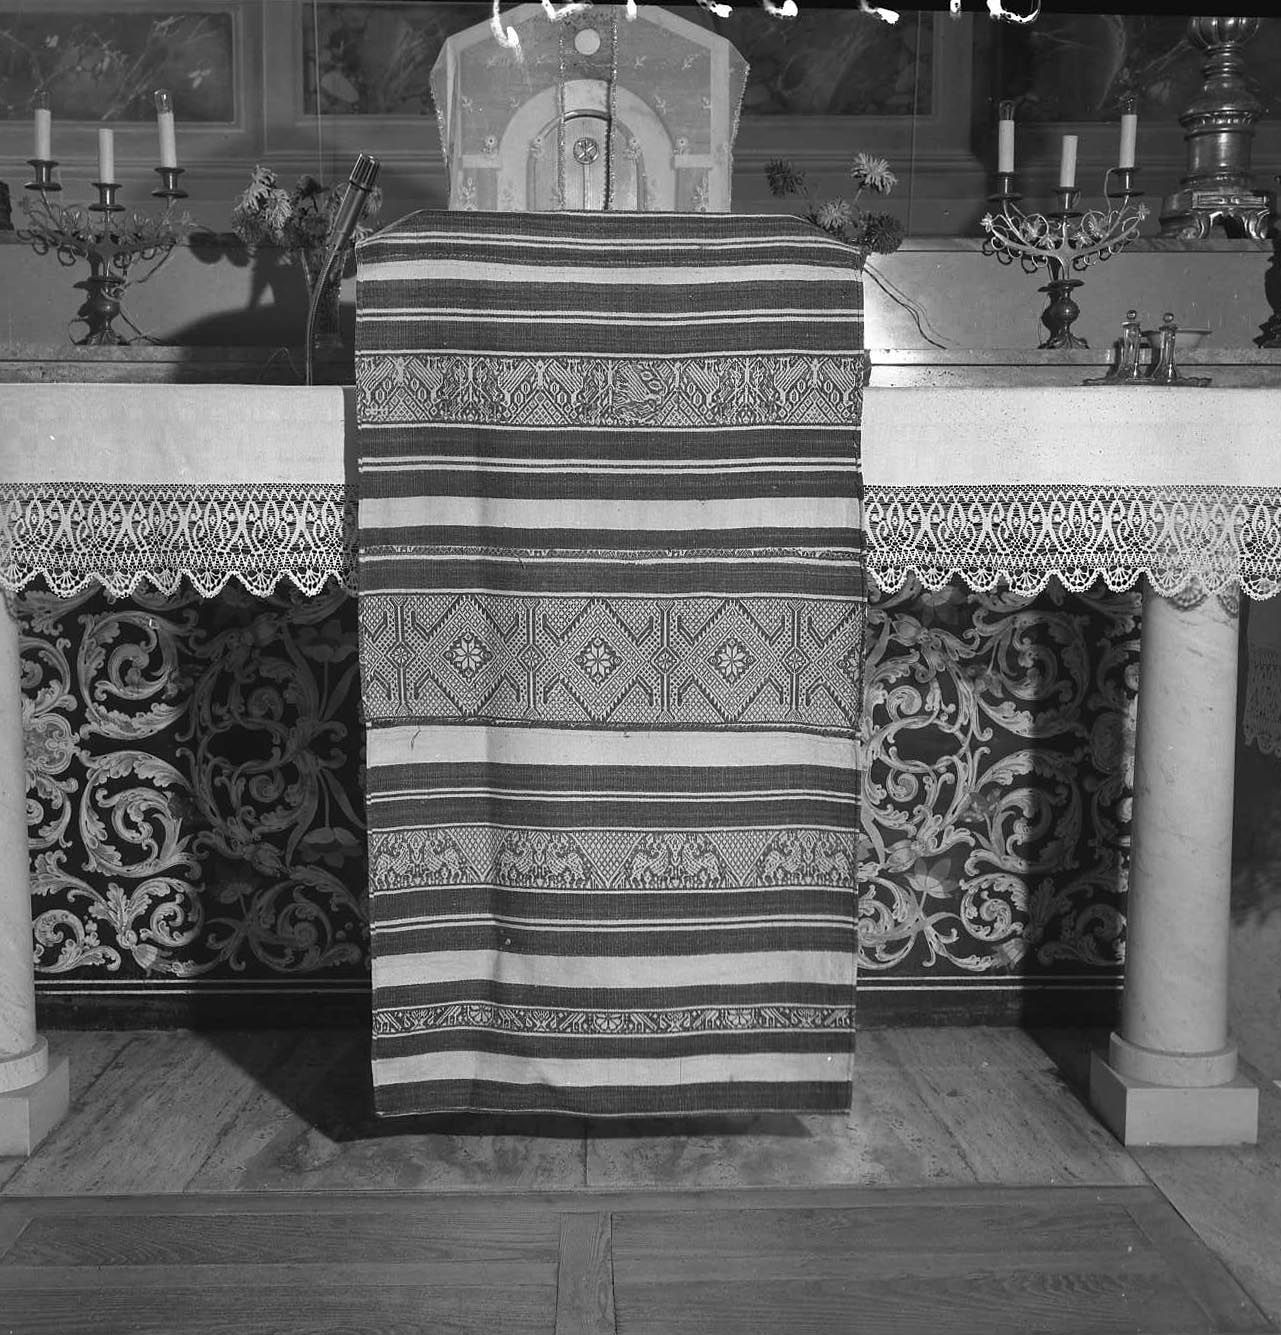 sottotovaglia d'altare - manifattura romagnola (fine/inizio secc. XIV/ XV)